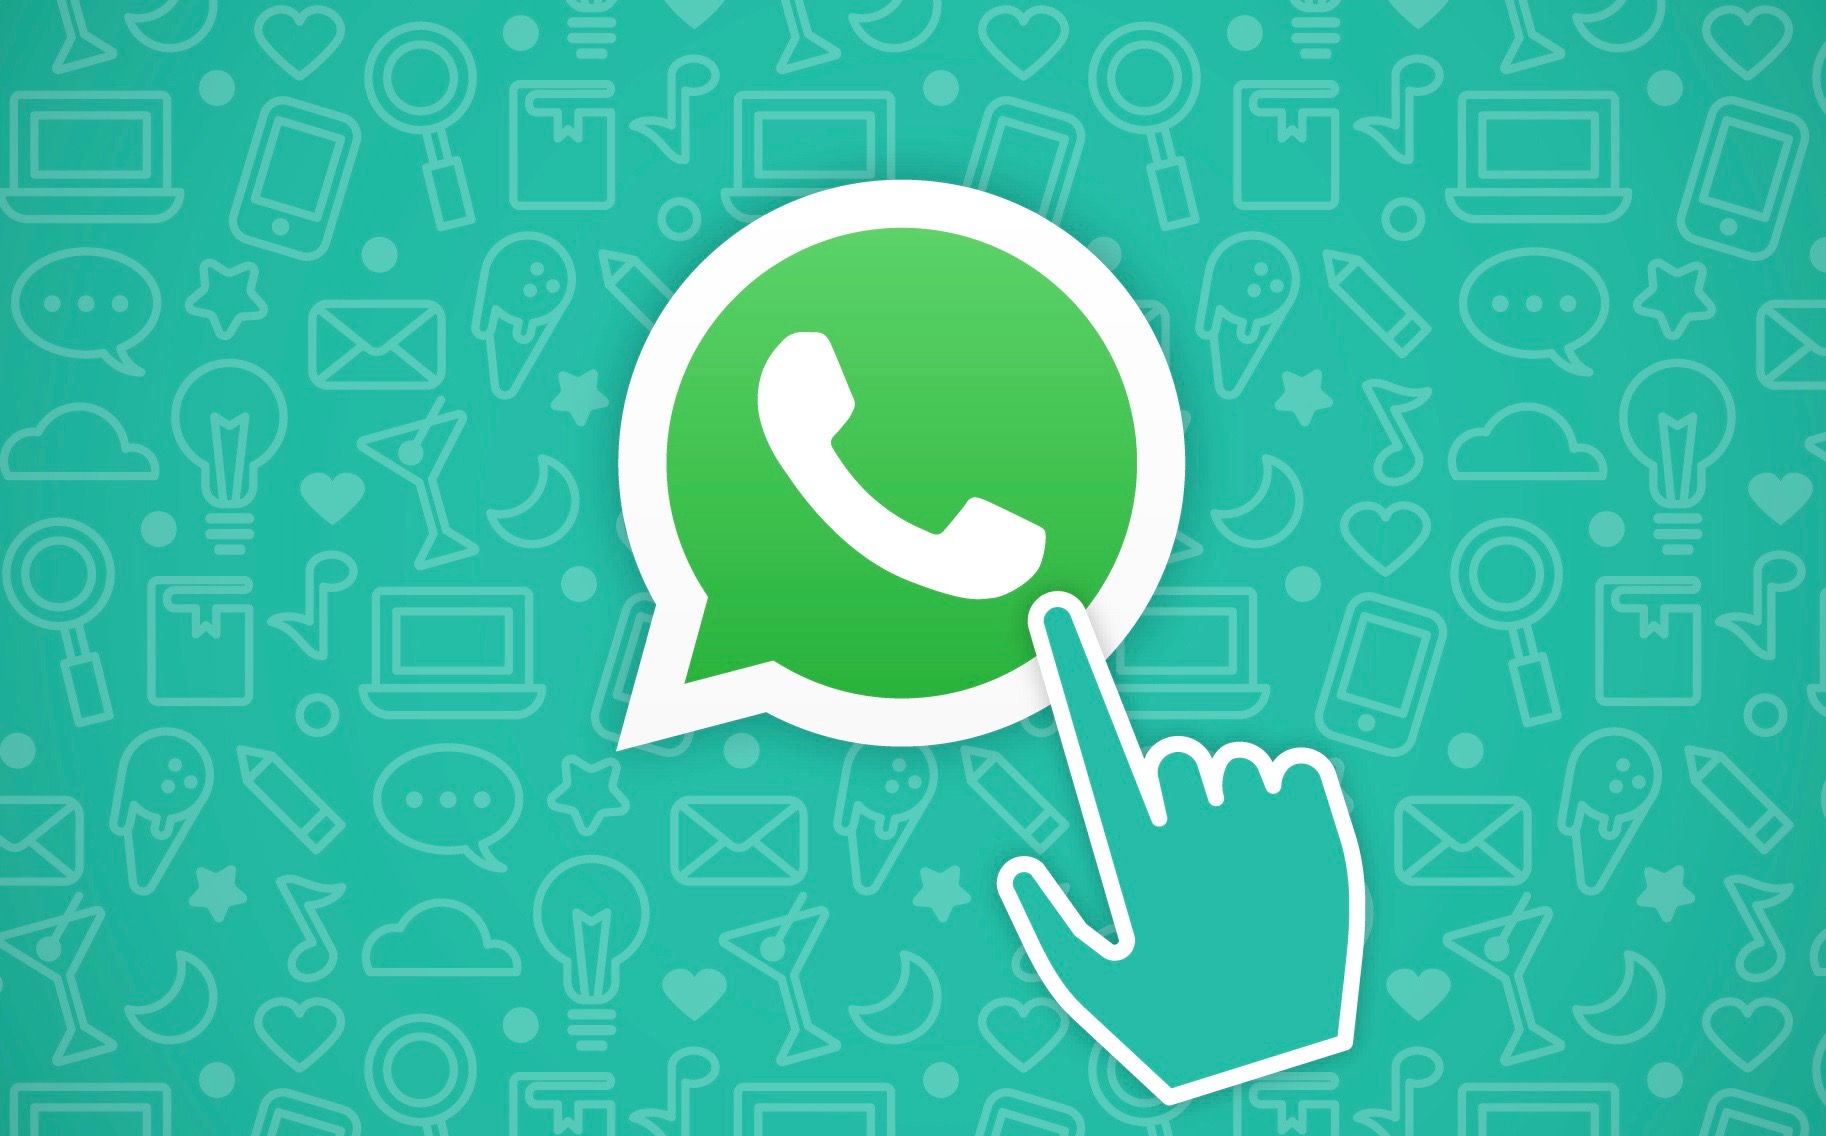 WhatsApp用户信息采集软件